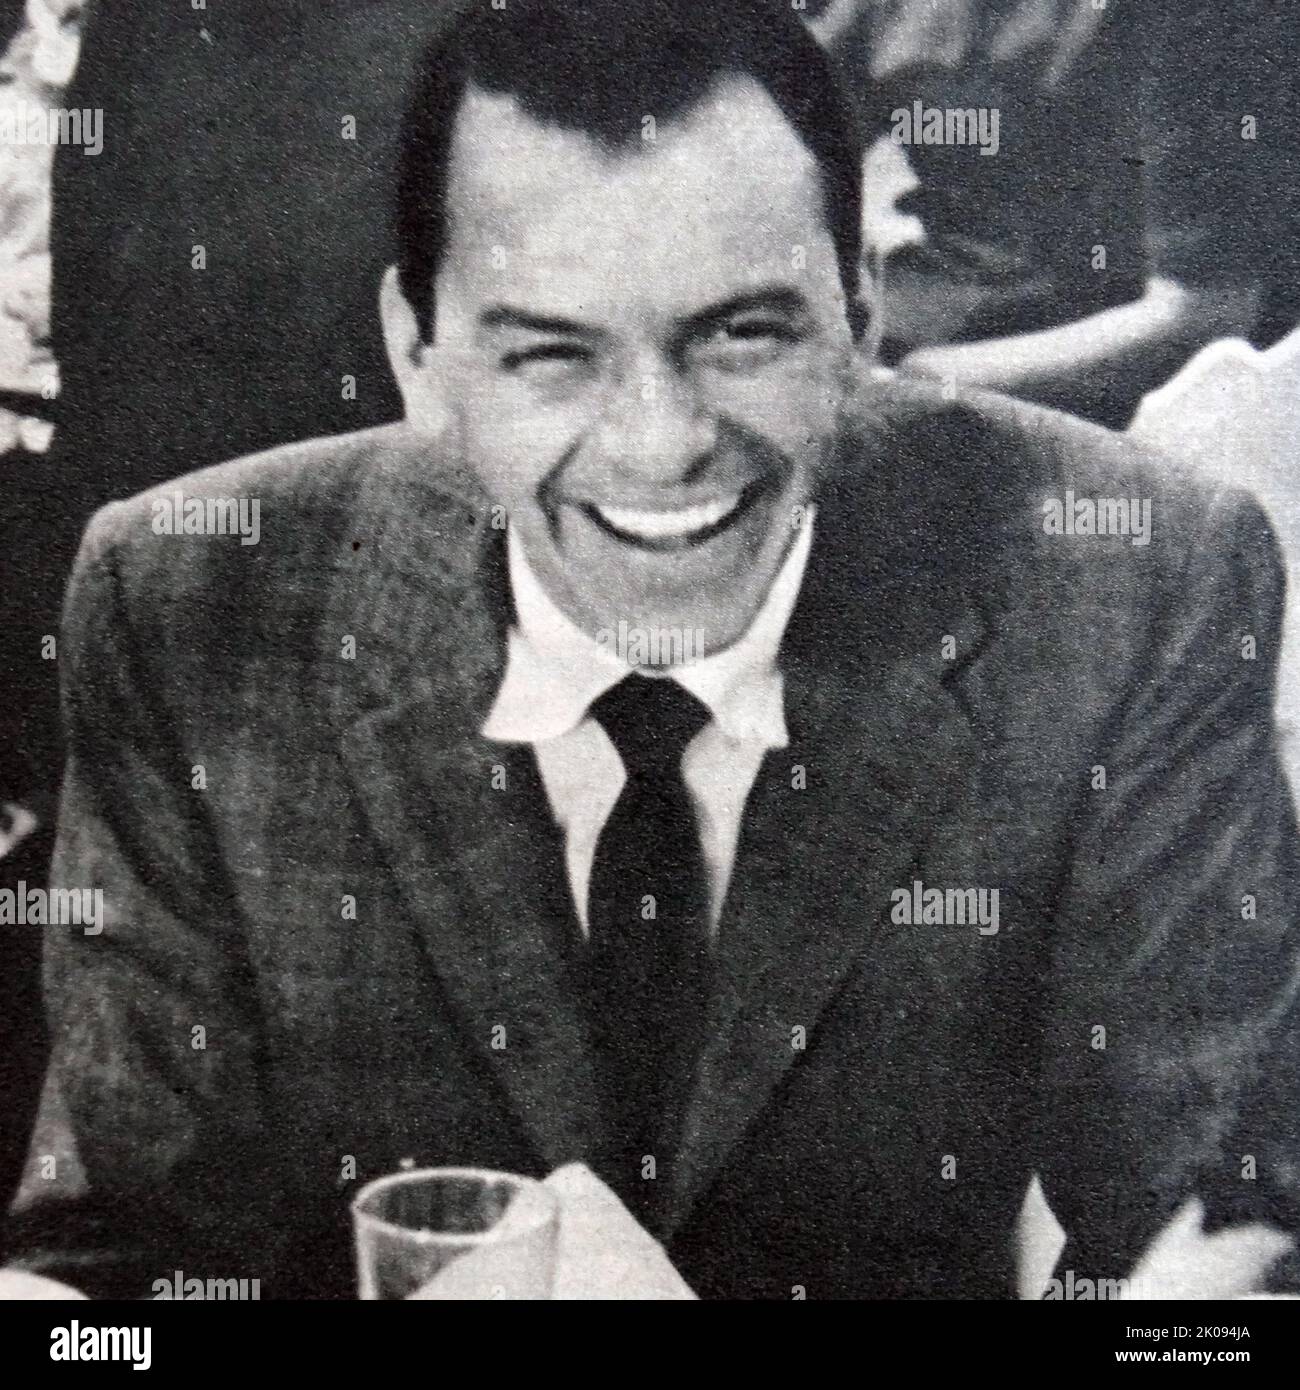 Zeitungsschnitt mit Foto von Frank Sinatra. Francis Albert Sinatra (12. Dezember 1915 - 14. Mai 1998) war ein amerikanischer Sänger und Schauspieler, der allgemein als einer der größten Musikkünstler des 20.. Jahrhunderts wahrgenommen wird. Er ist einer der meistverkauften Musikkünstler aller Zeiten und hat weltweit schätzungsweise 150 Millionen Schallplatten verkauft. Stockfoto